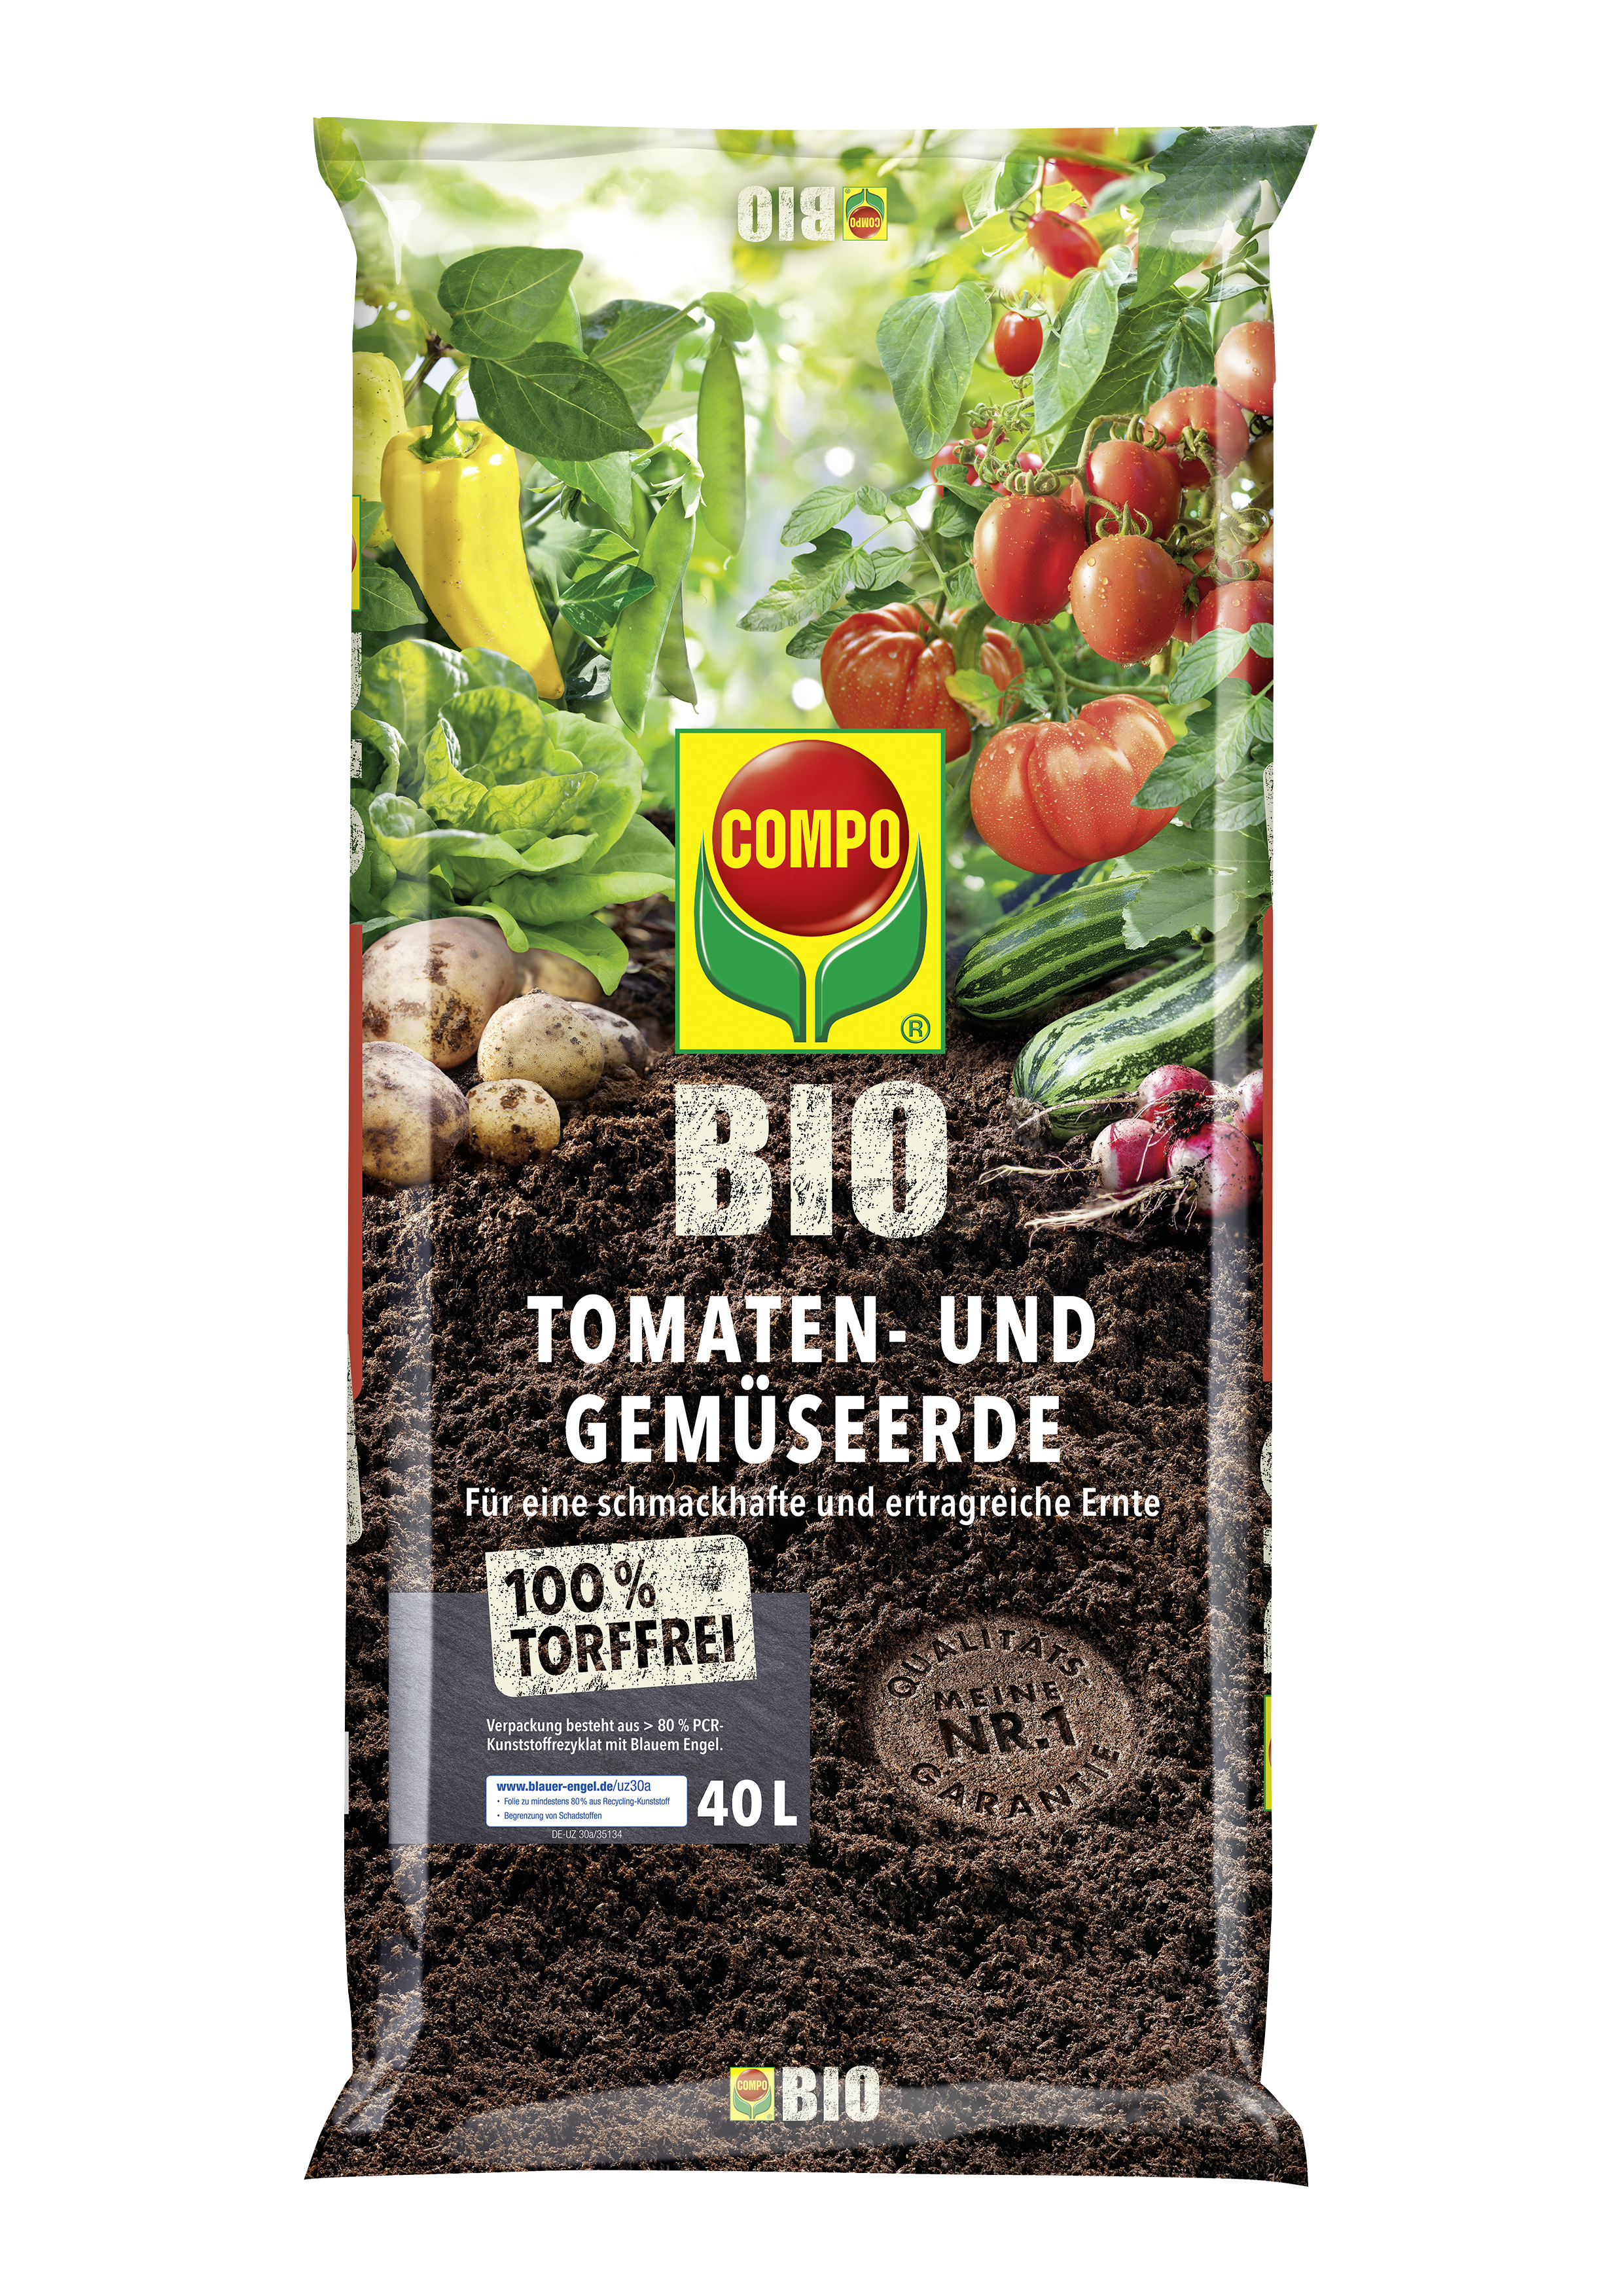 Compo Bio Tomaten- und Gemüseerde torffrei, 40L